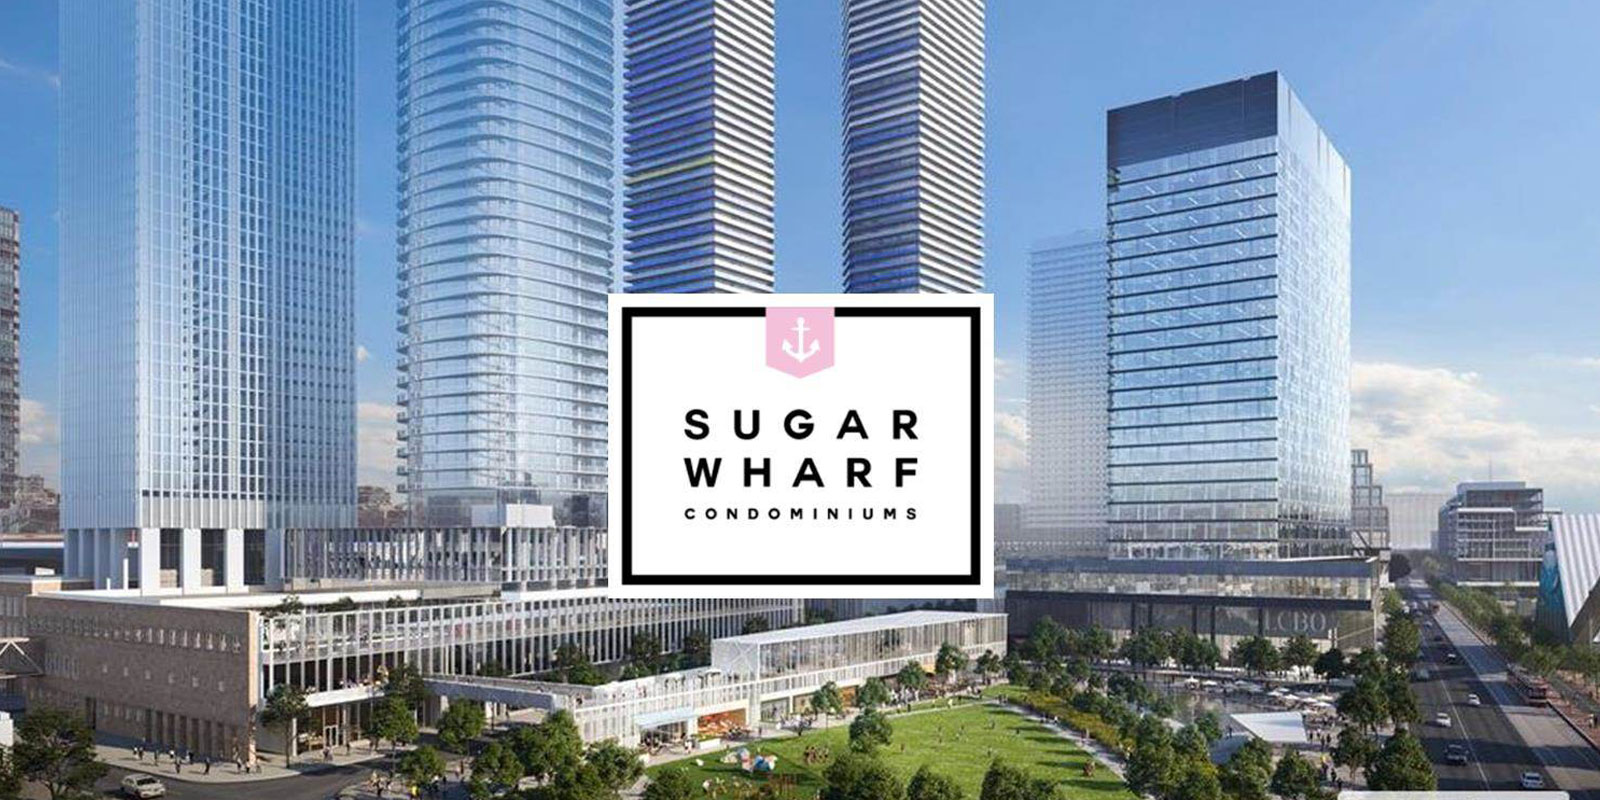 Sugar Wharf Condominiums